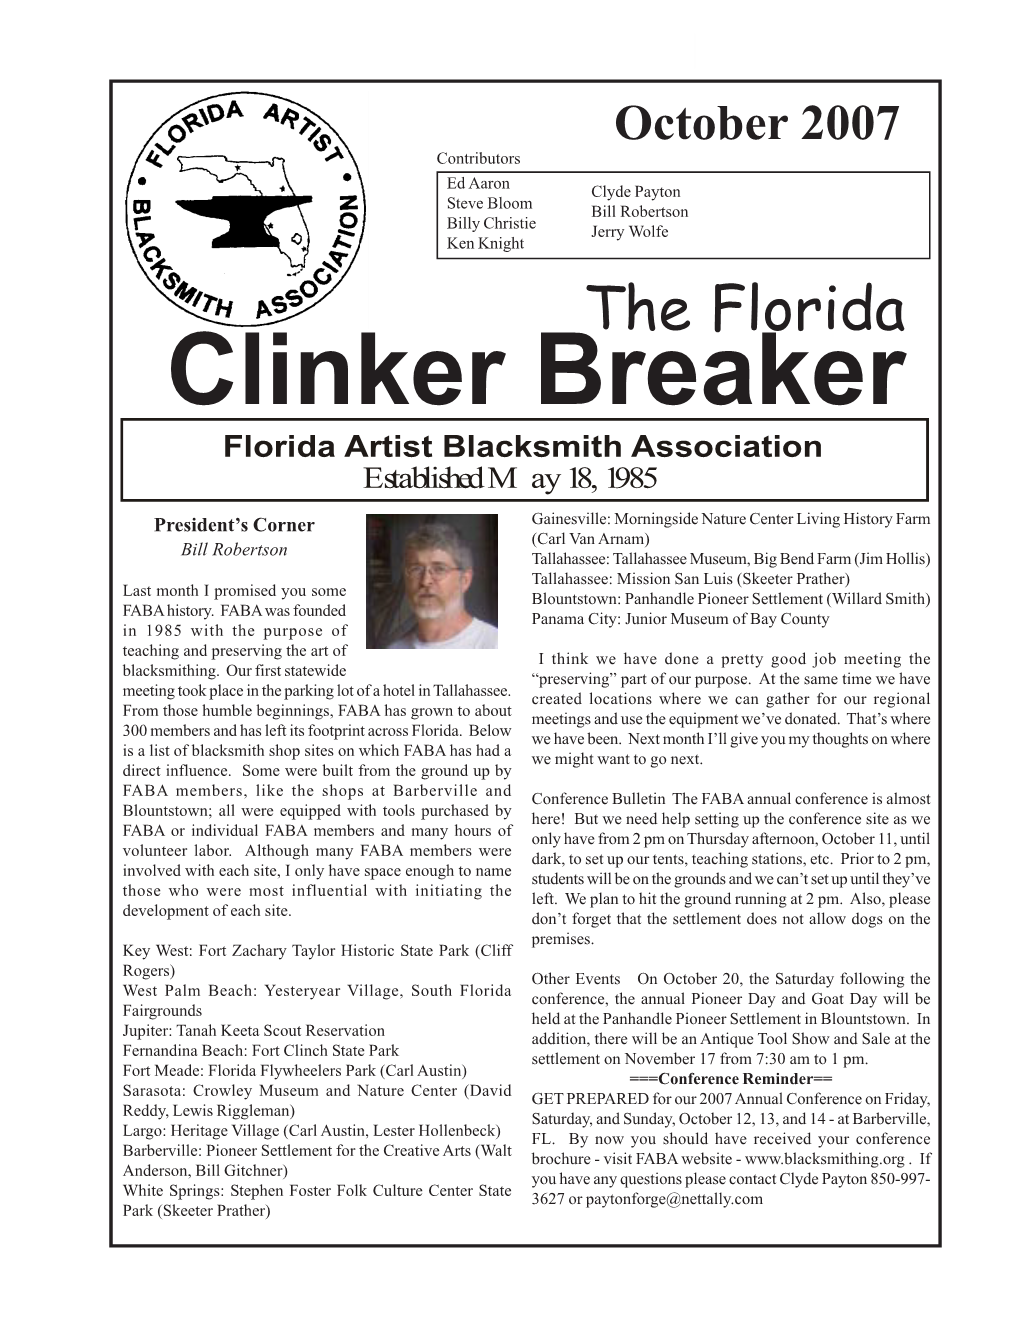 Clinker Breaker - Oct